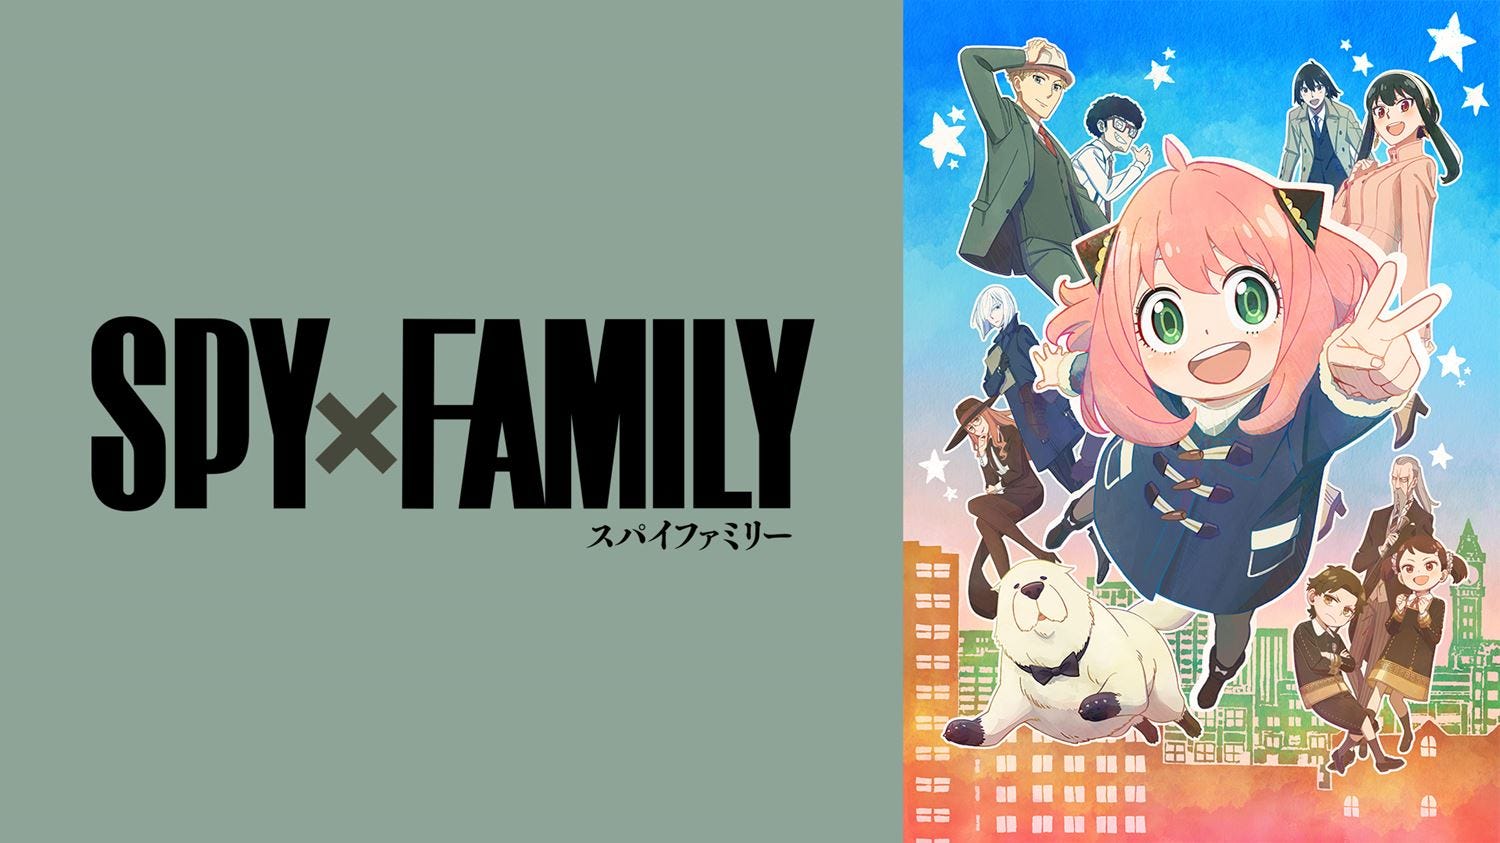 アニメ Spy Family 第2クール 10月1日より無料放送開始 第1クール全話一挙放送も モデルプレス